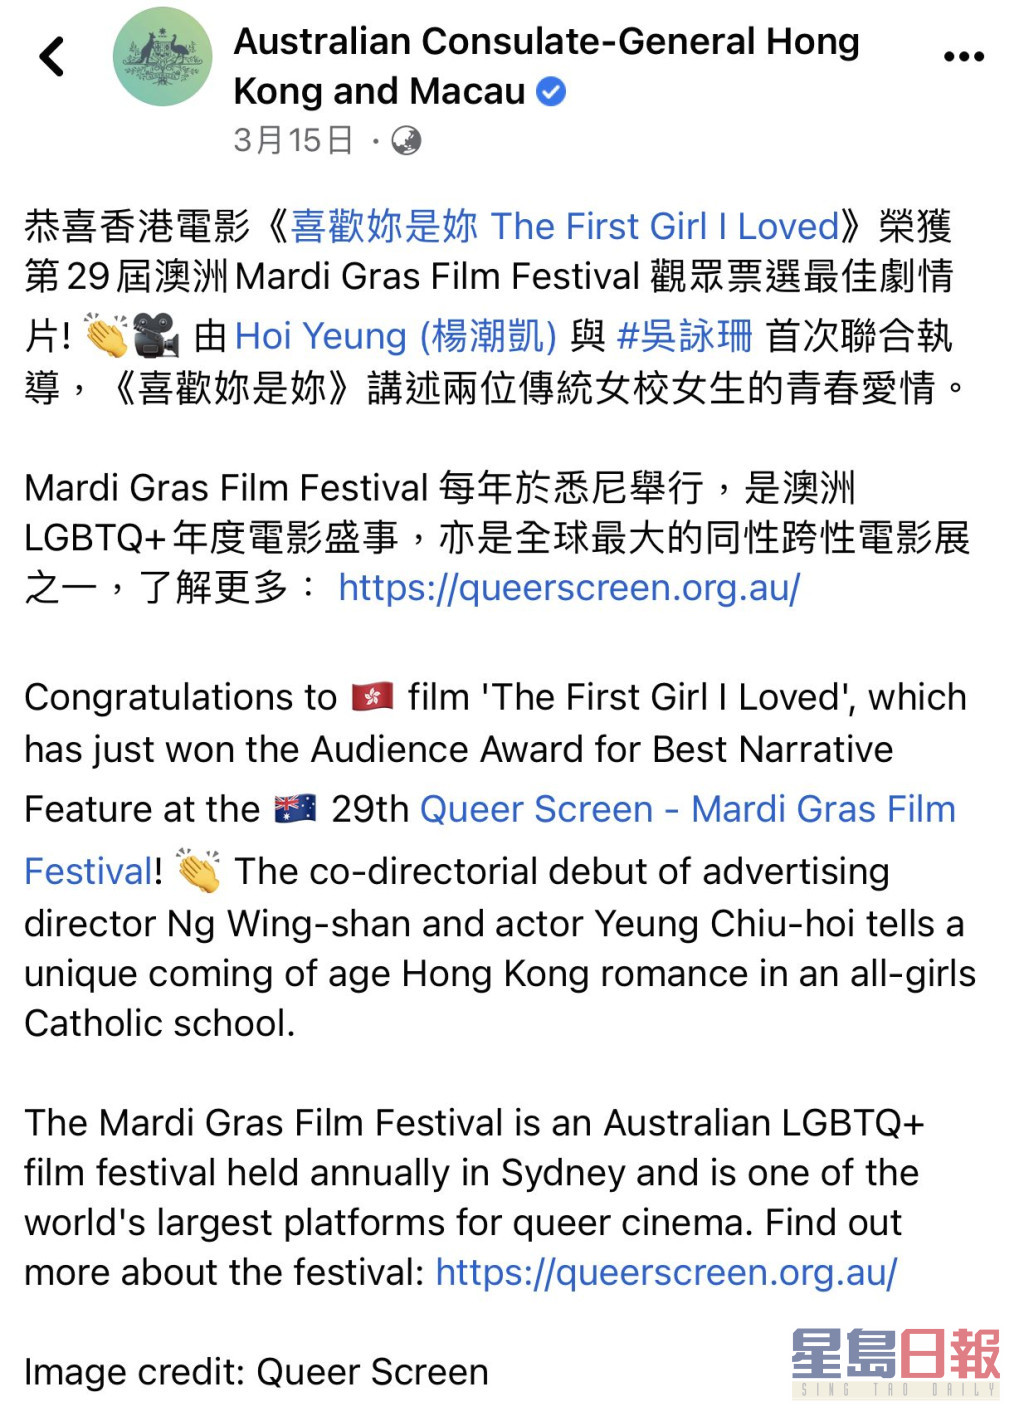 连澳洲驻香港领事馆，亦在Facebook出post恭贺电影得奖。